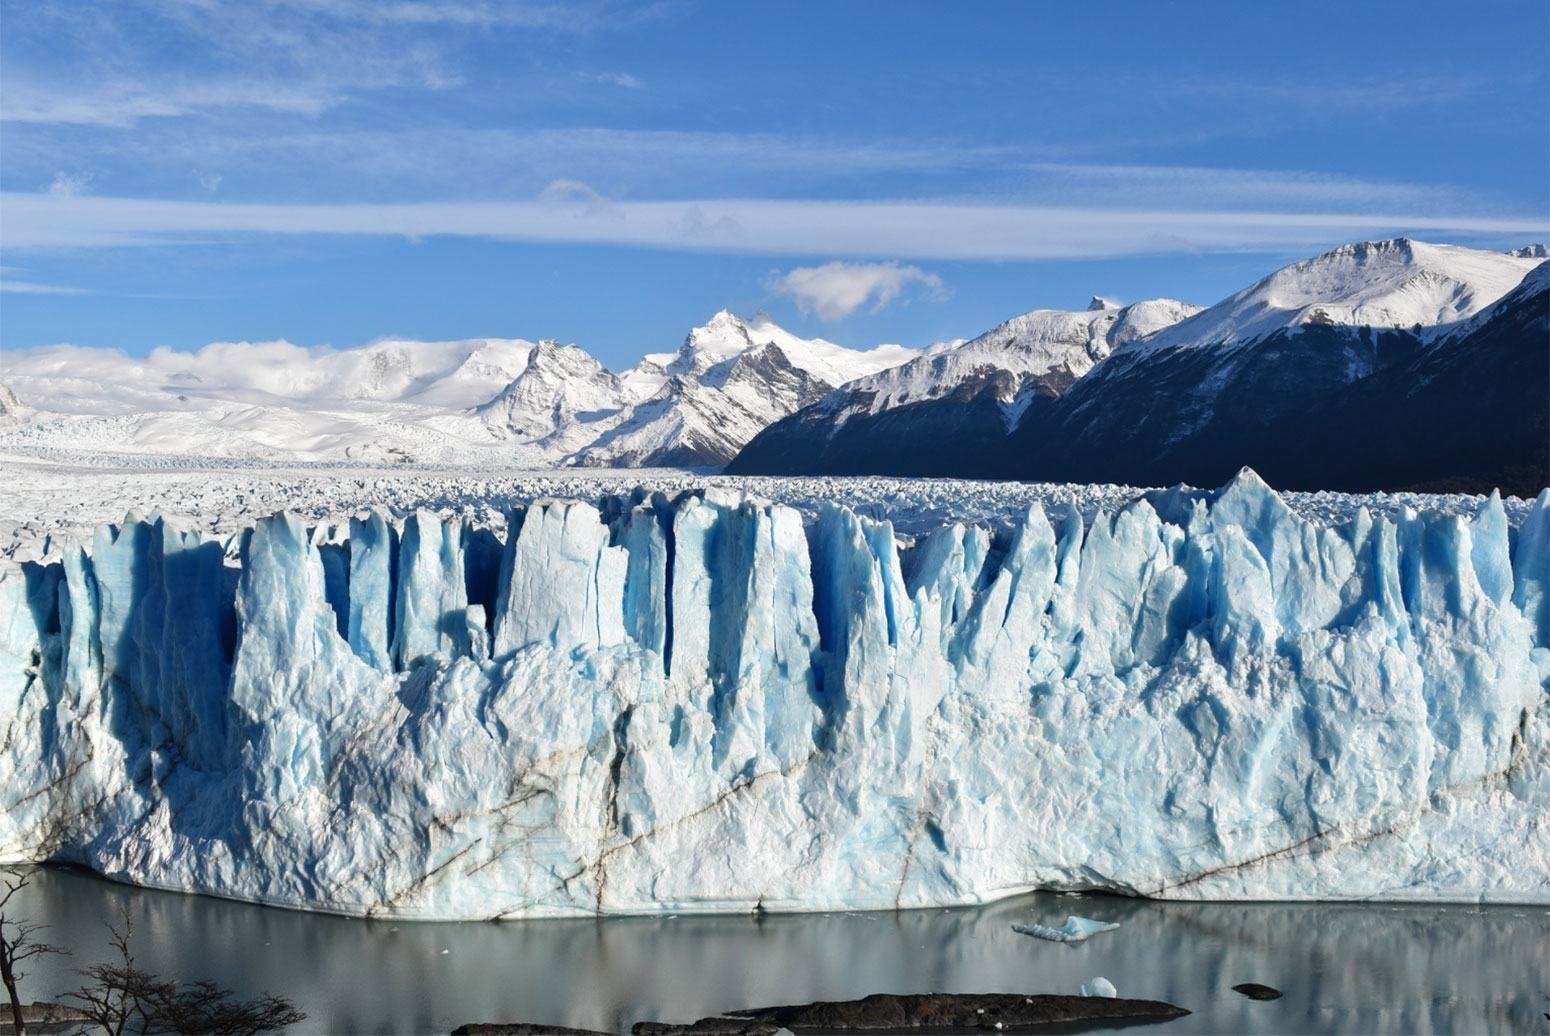 تراجعت الأنهار الجليدية في تشيلي والأرجنتين بشكل ملحوظ خلال العقدين الماضيين.